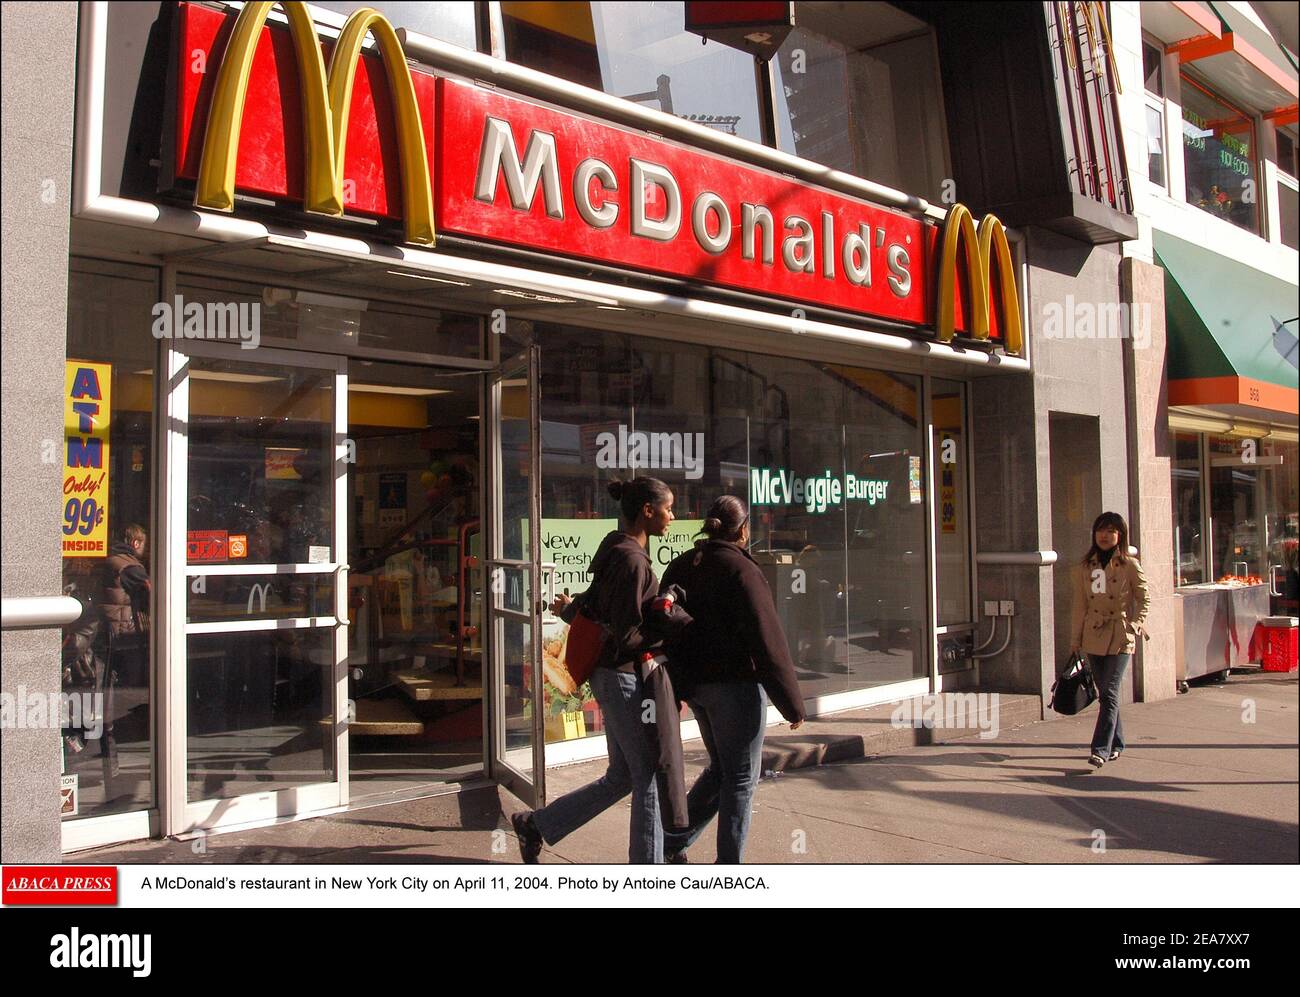 Un restaurant McDonald's à New York le 11 avril 2004. Photo par Antoine Cau/ABACA. Banque D'Images